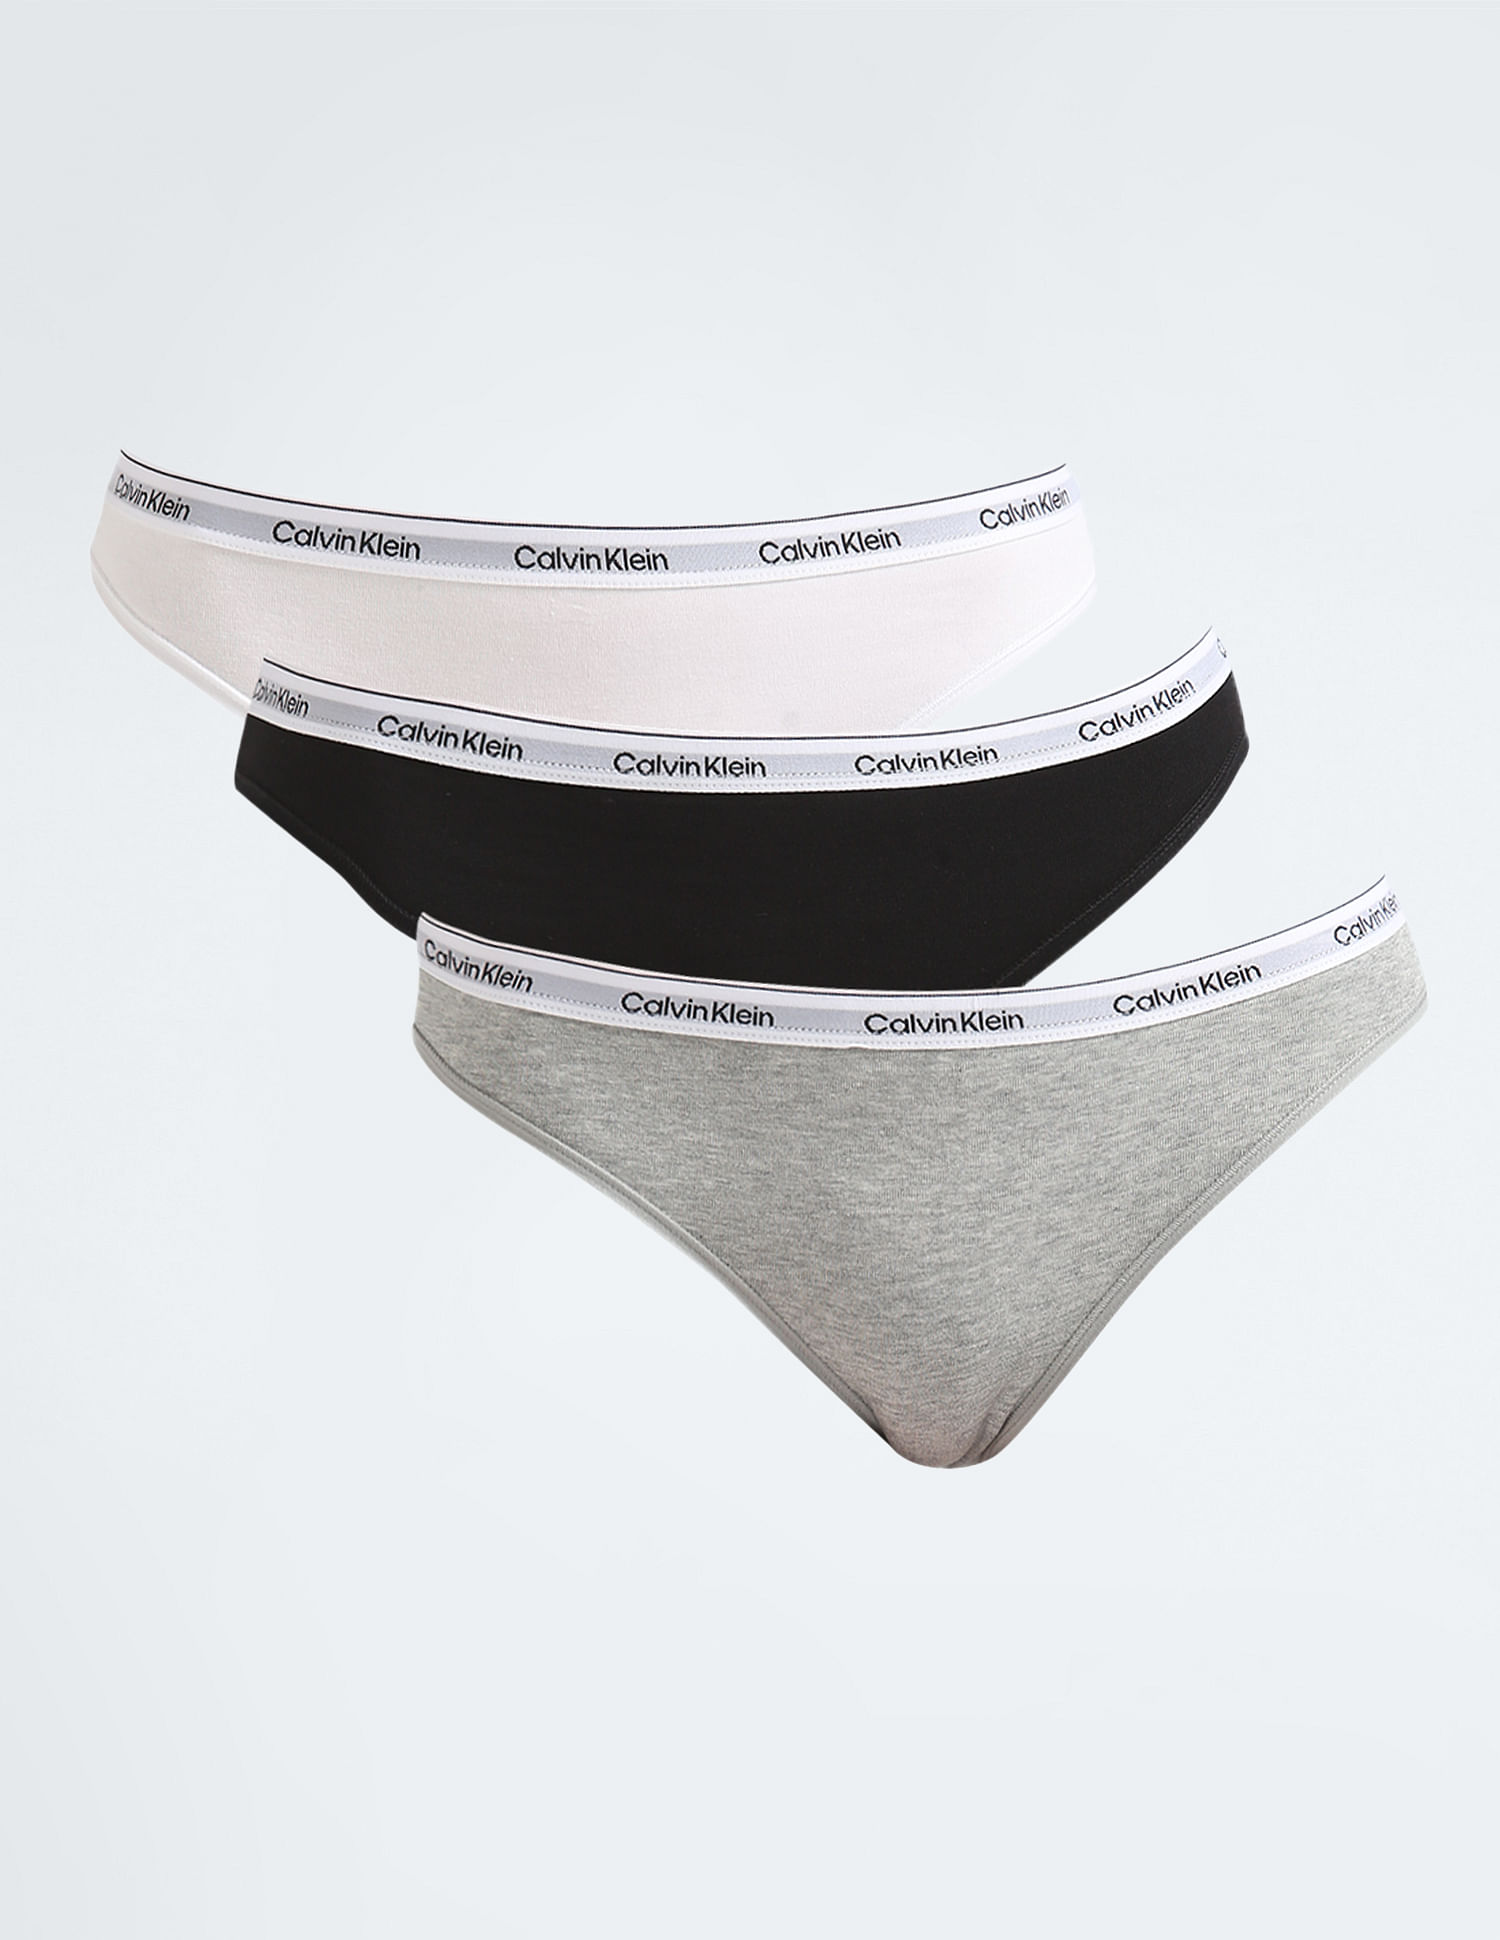 Calvin Klein Underwear Women Thong White Panty - Buy Calvin Klein Underwear  Women Thong White Panty Online at Best Prices in India